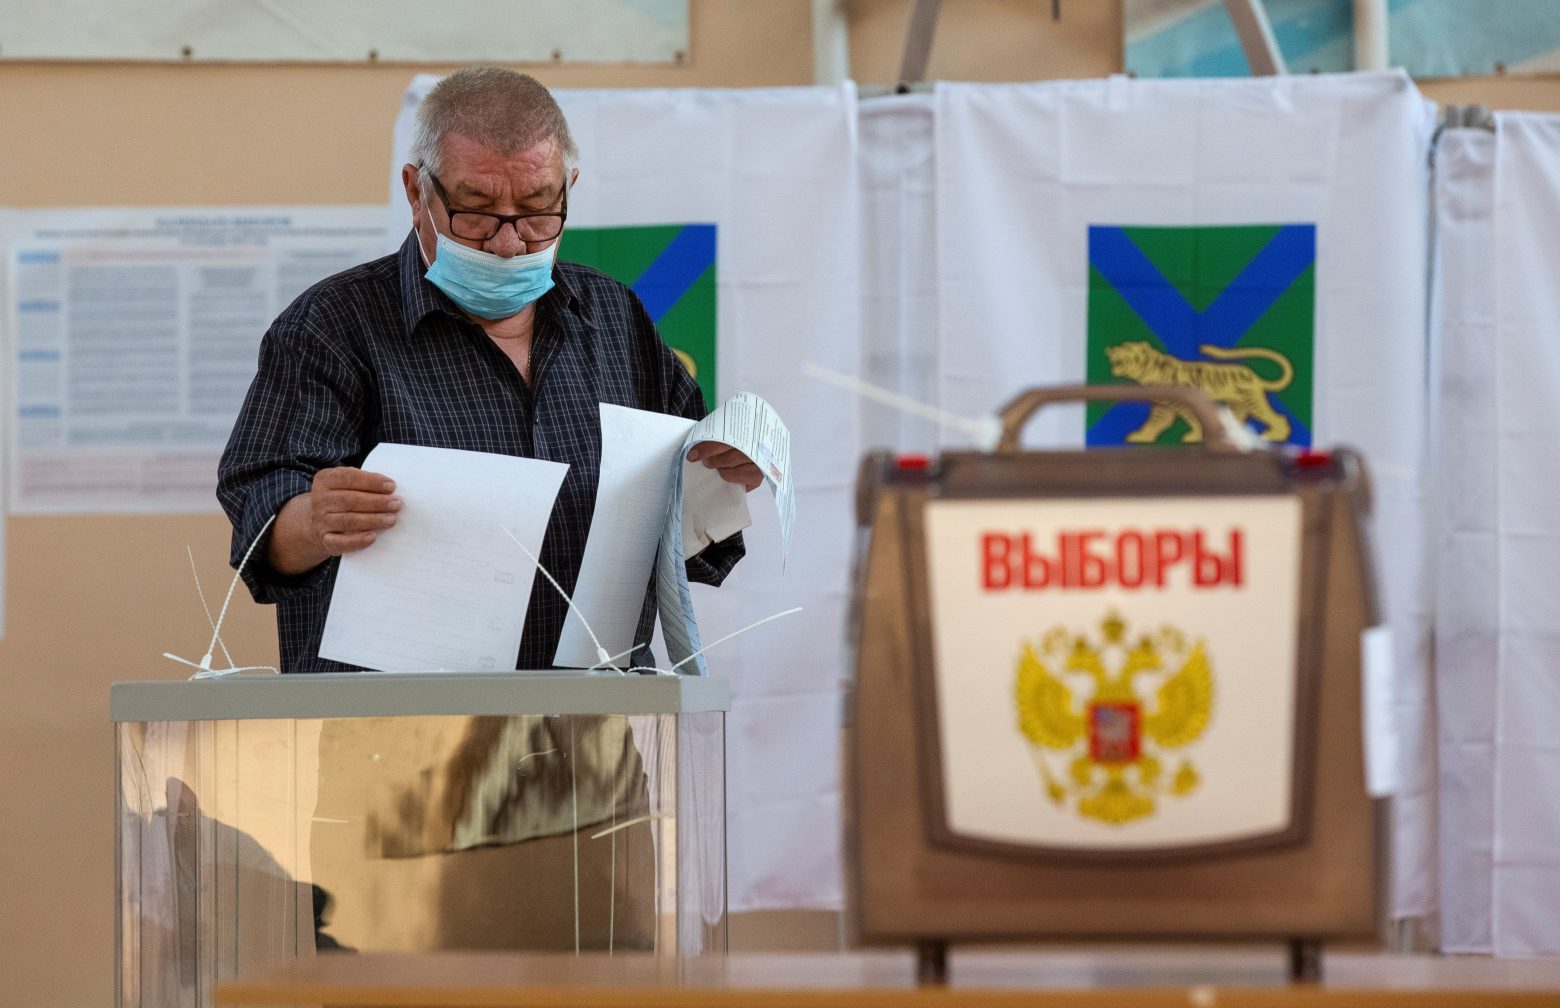 Ρώσια - Κλείνουν οι κάλπες για τις βουλευτικές εκλογές - Δεδομένη θεωρείται η νίκη του κόμματος του Πούτιν